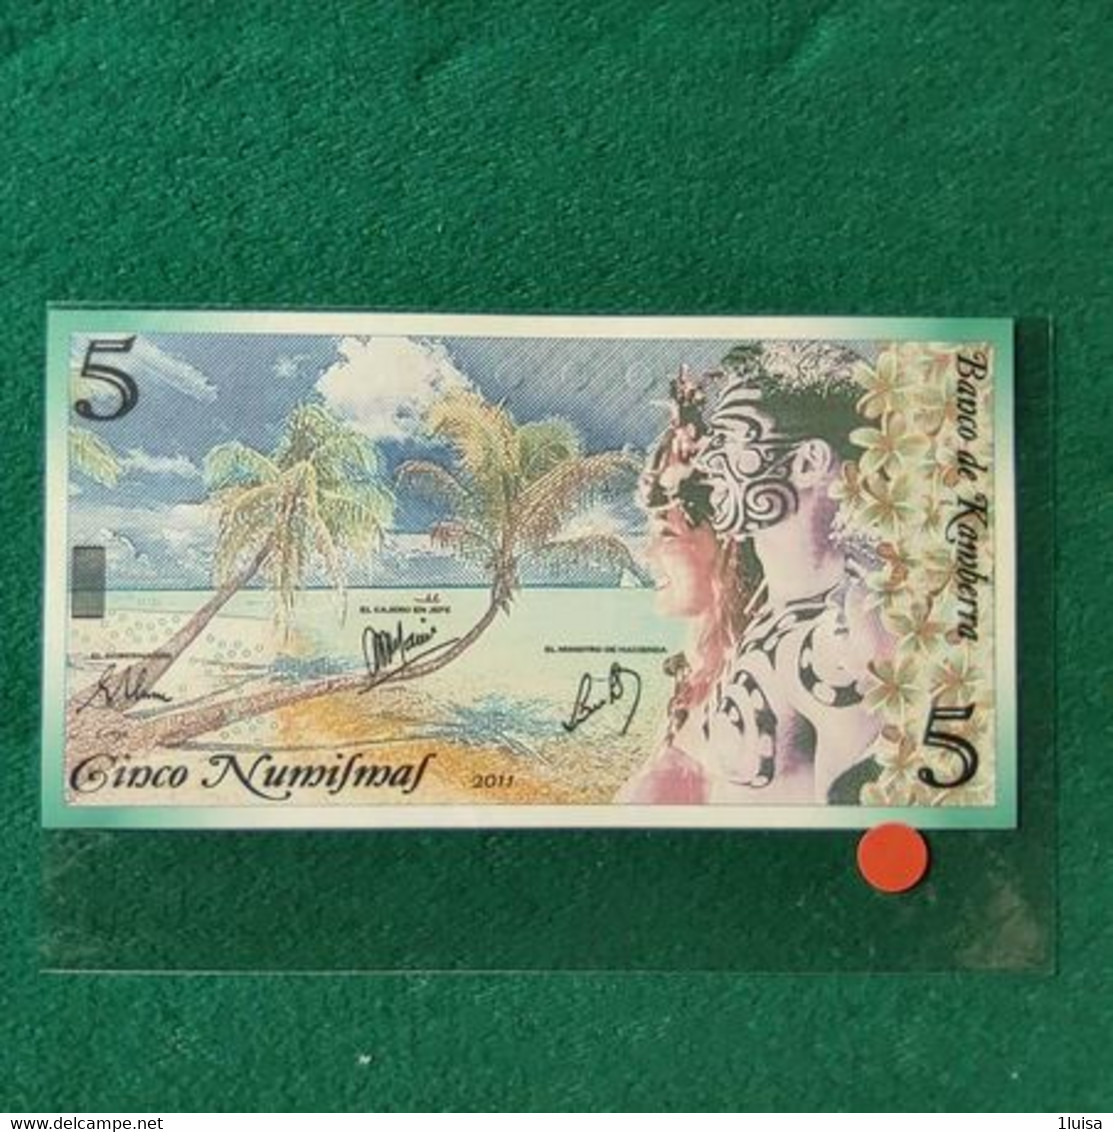 AUSTRALIA FANTASY KAMBERRA 5 - 1988 (10$ Polymer Notes)